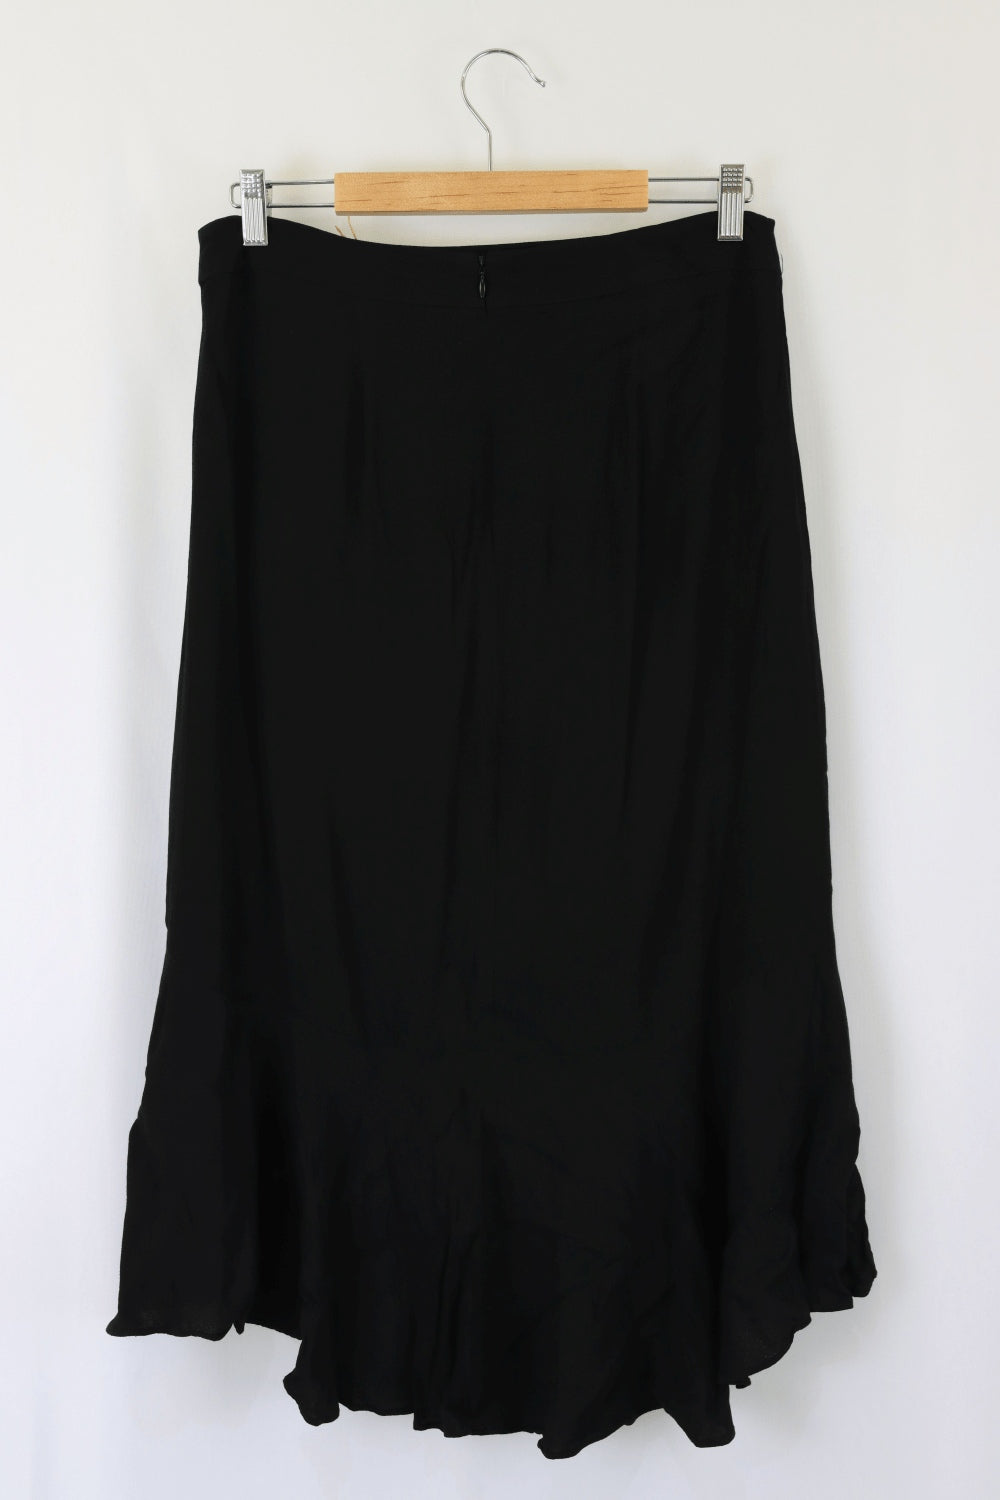 Portmans Black Skirt 12